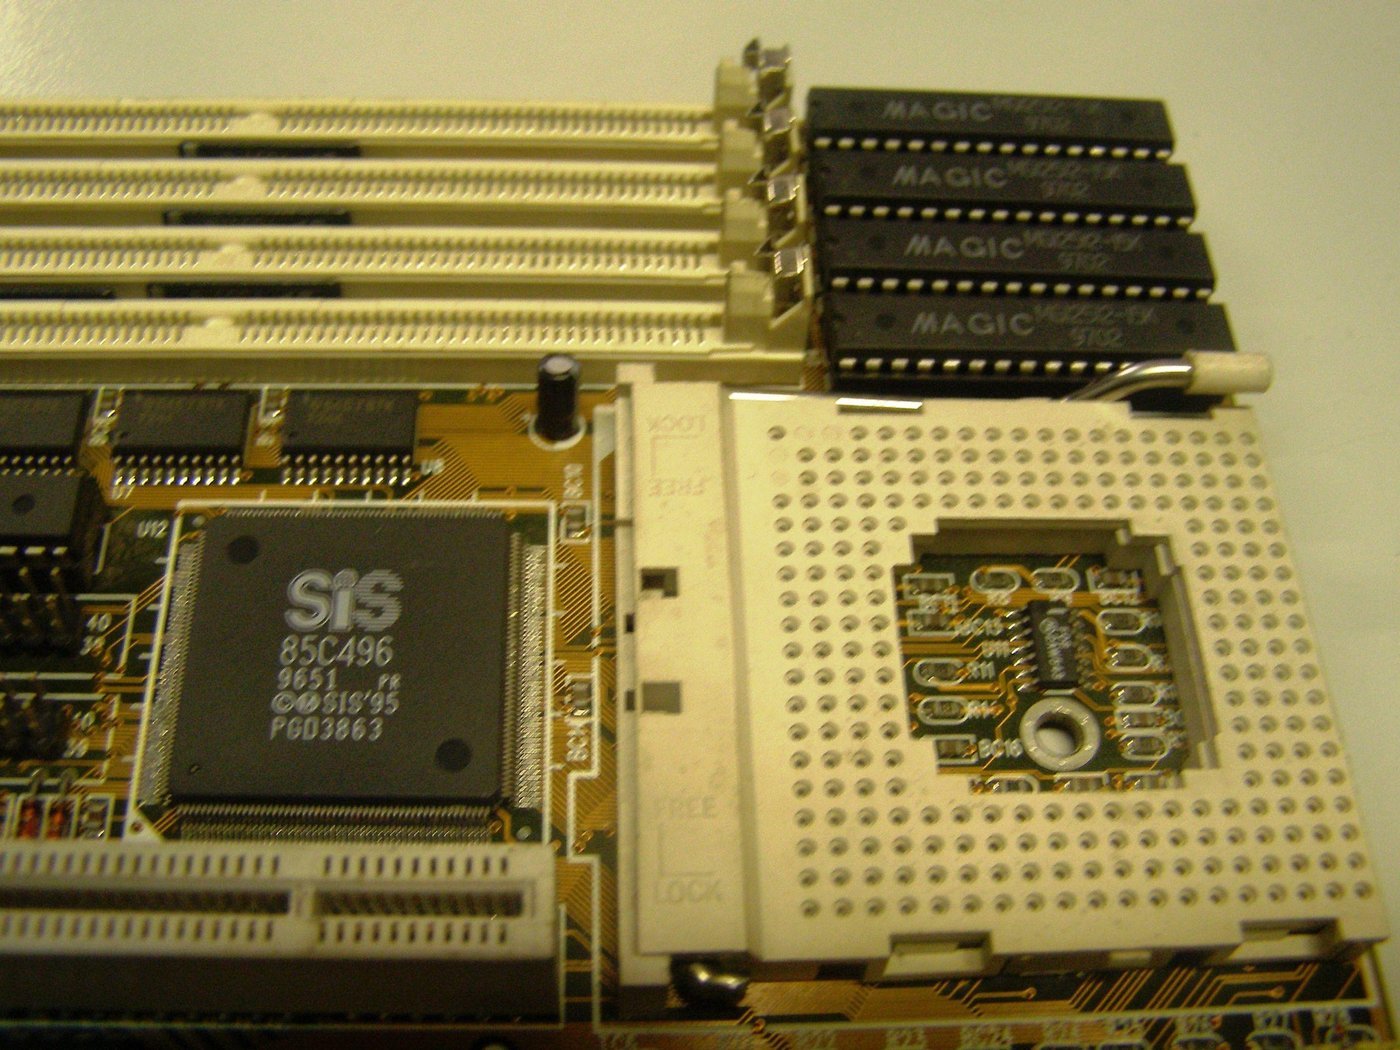 Кэш L2 (4 микросхемы справа вверху) находится на материнской плате у процессора, а L1 прям на кристалле. Технологии!